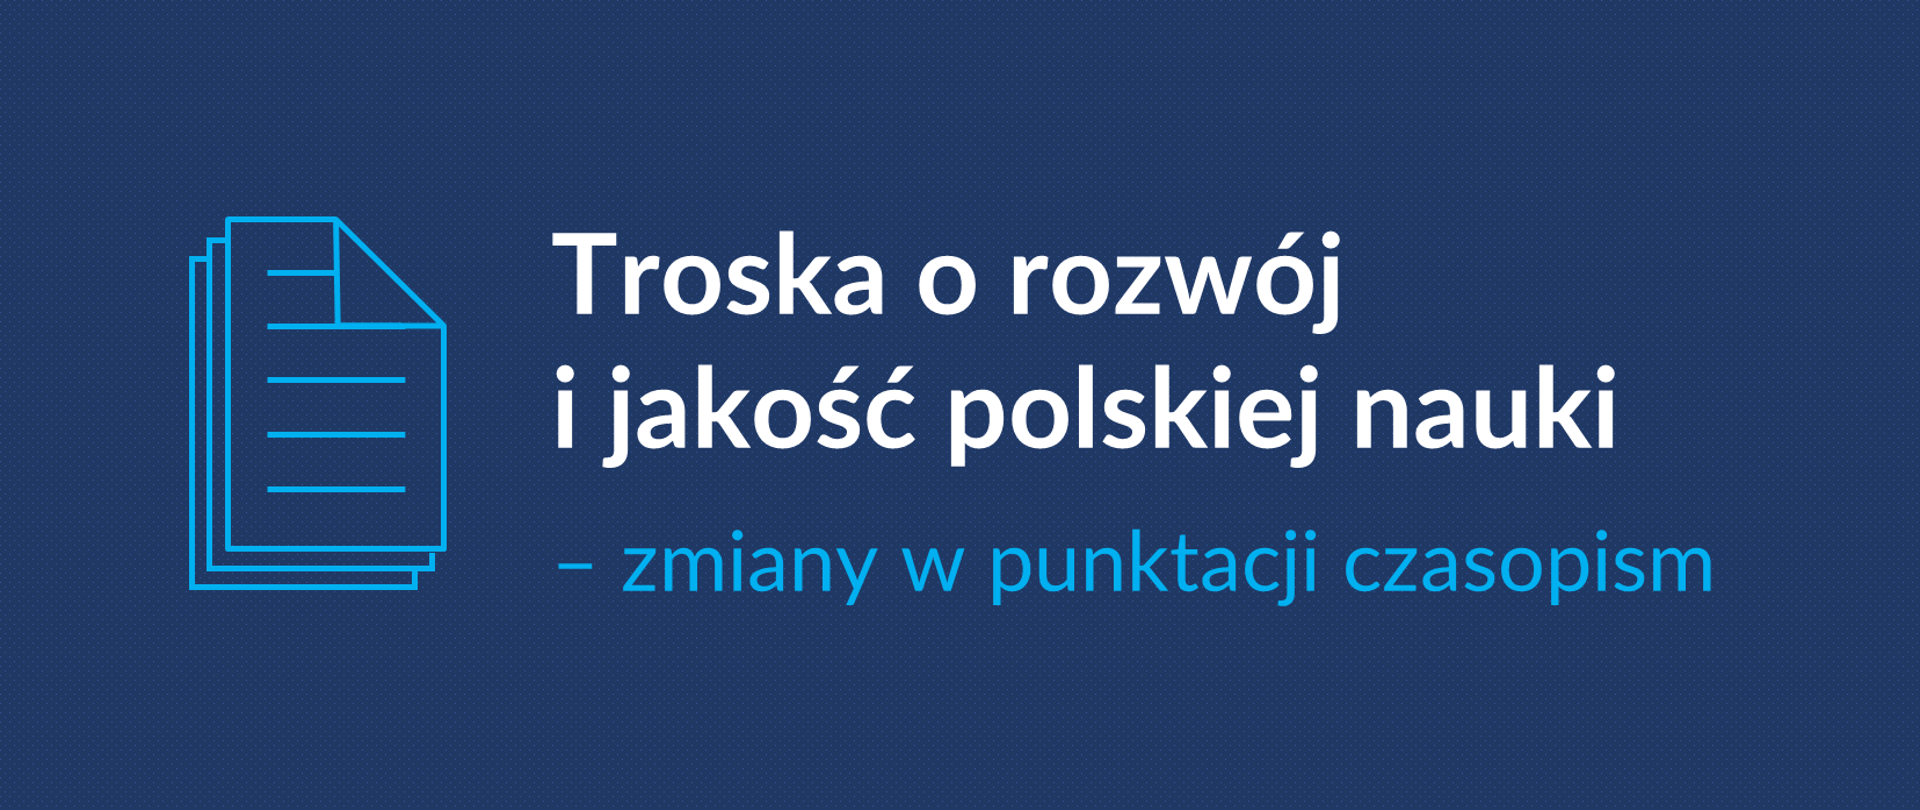 Grafika z tekstem: "Troska o rozwój i jakość polskiej nauki – zmiany w punktacji czasopism"